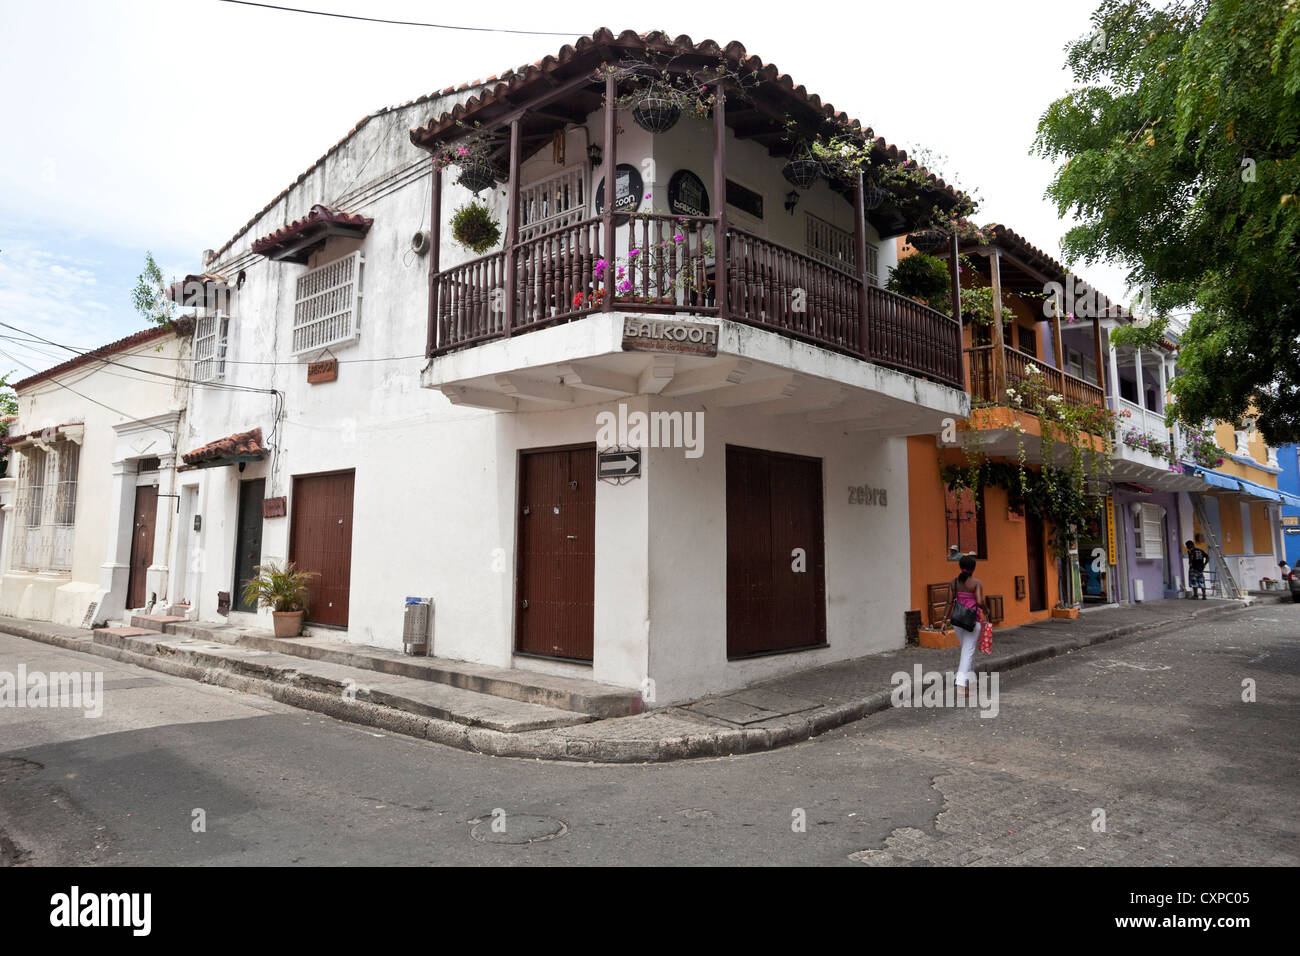 Maison de l'architecture coloniale espagnole, Cartagena de Indias, Colombie. Banque D'Images